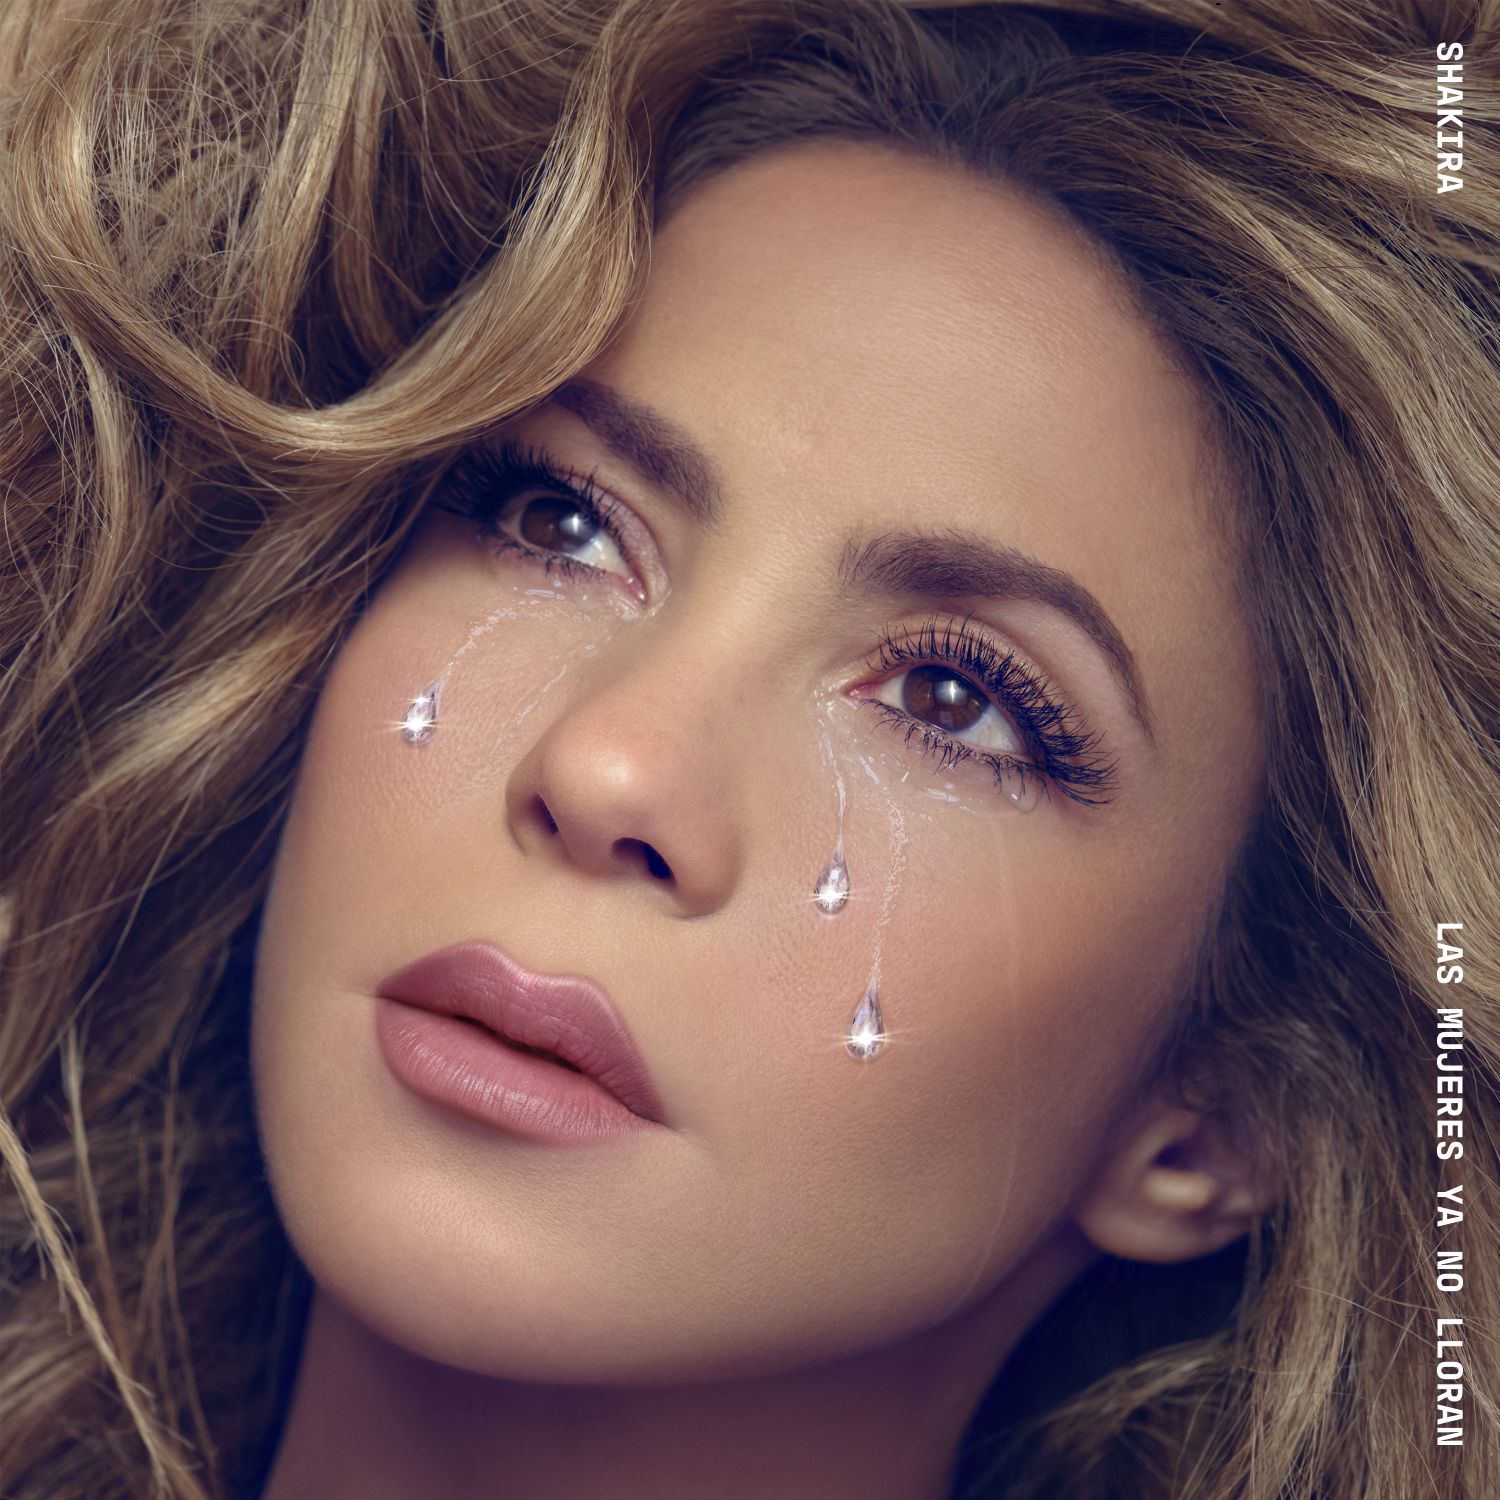 Il 22 marzo torna Shakira con il nuovo attesissimo album “Las mujeres ya no lloran”